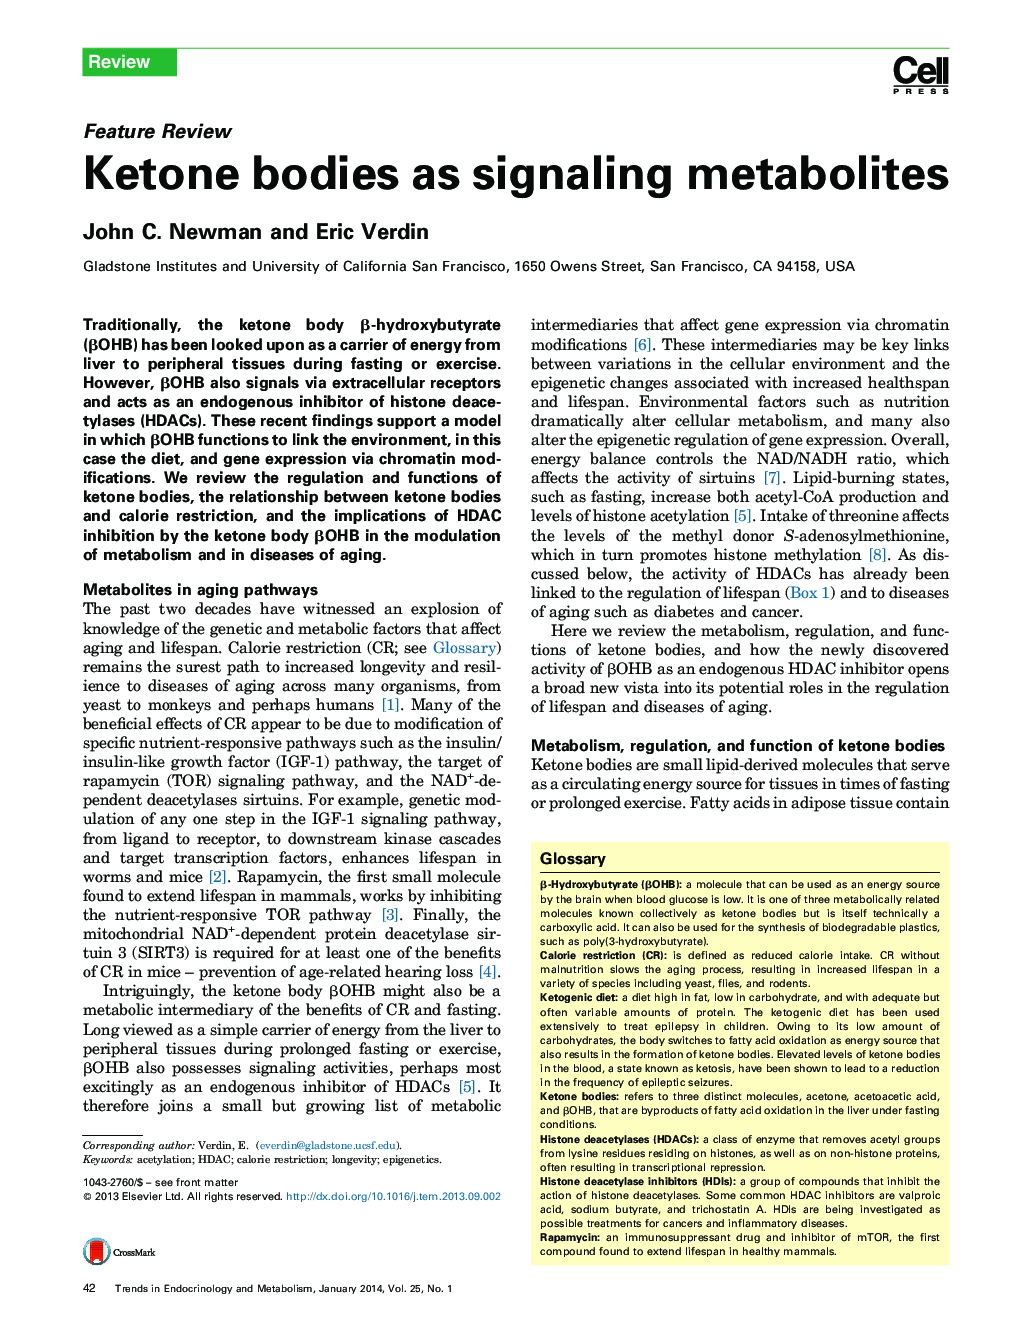 Ketone bodies as signaling metabolites